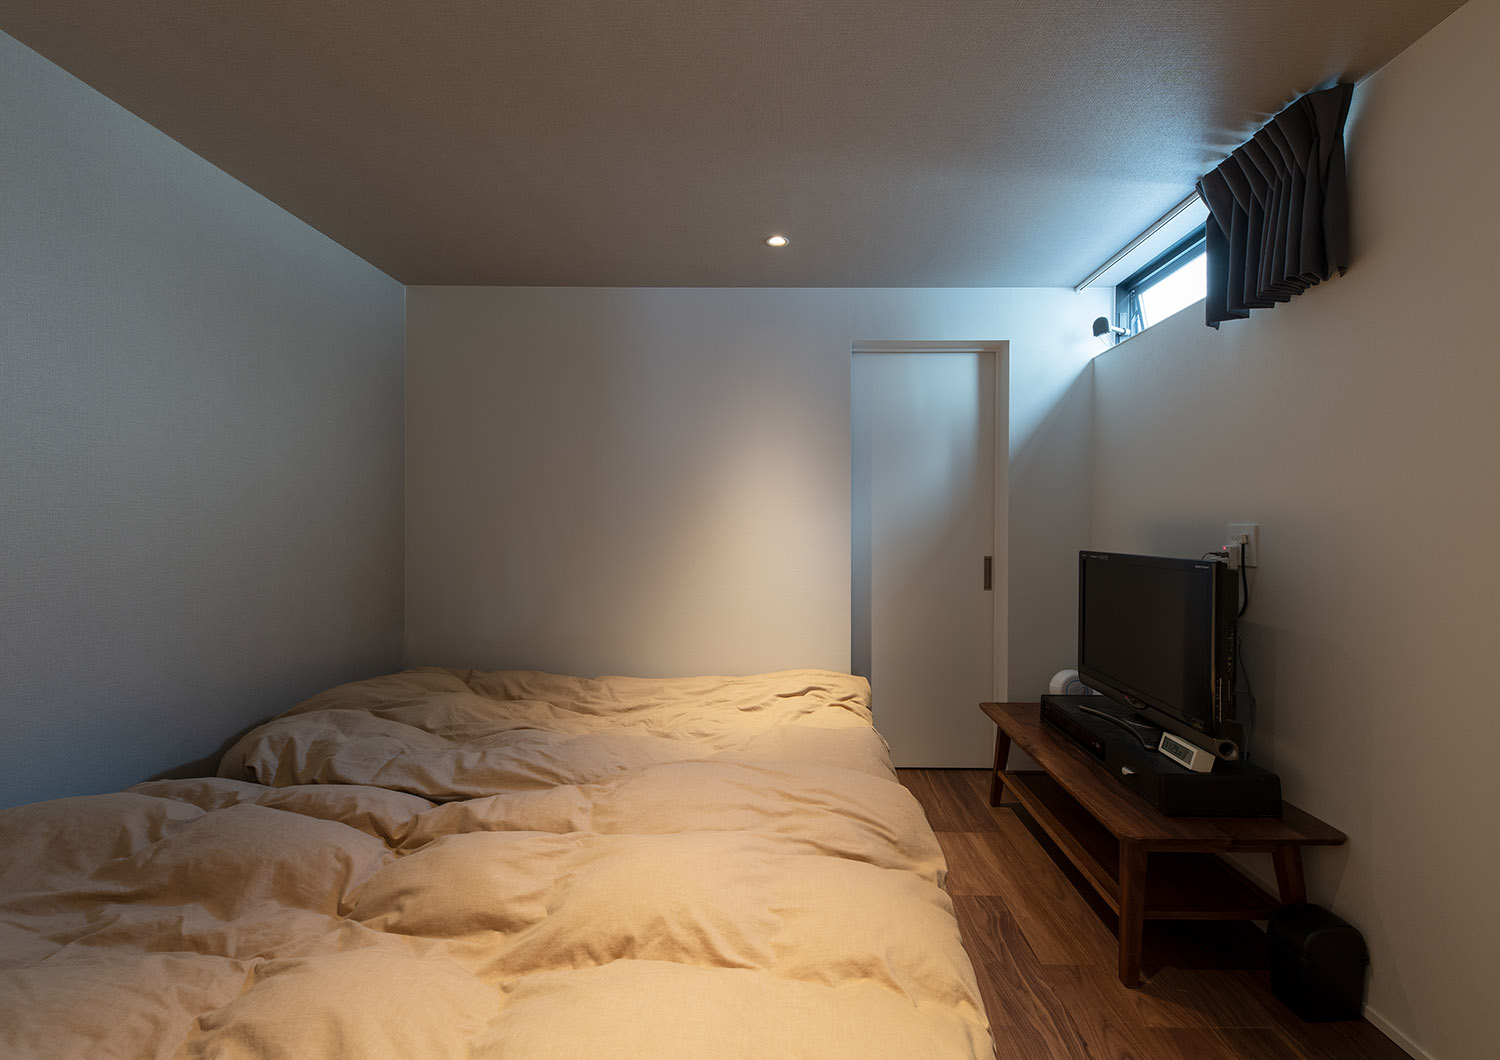 ハイサイドライトがある、テレビを置いた寝室・デザイン住宅